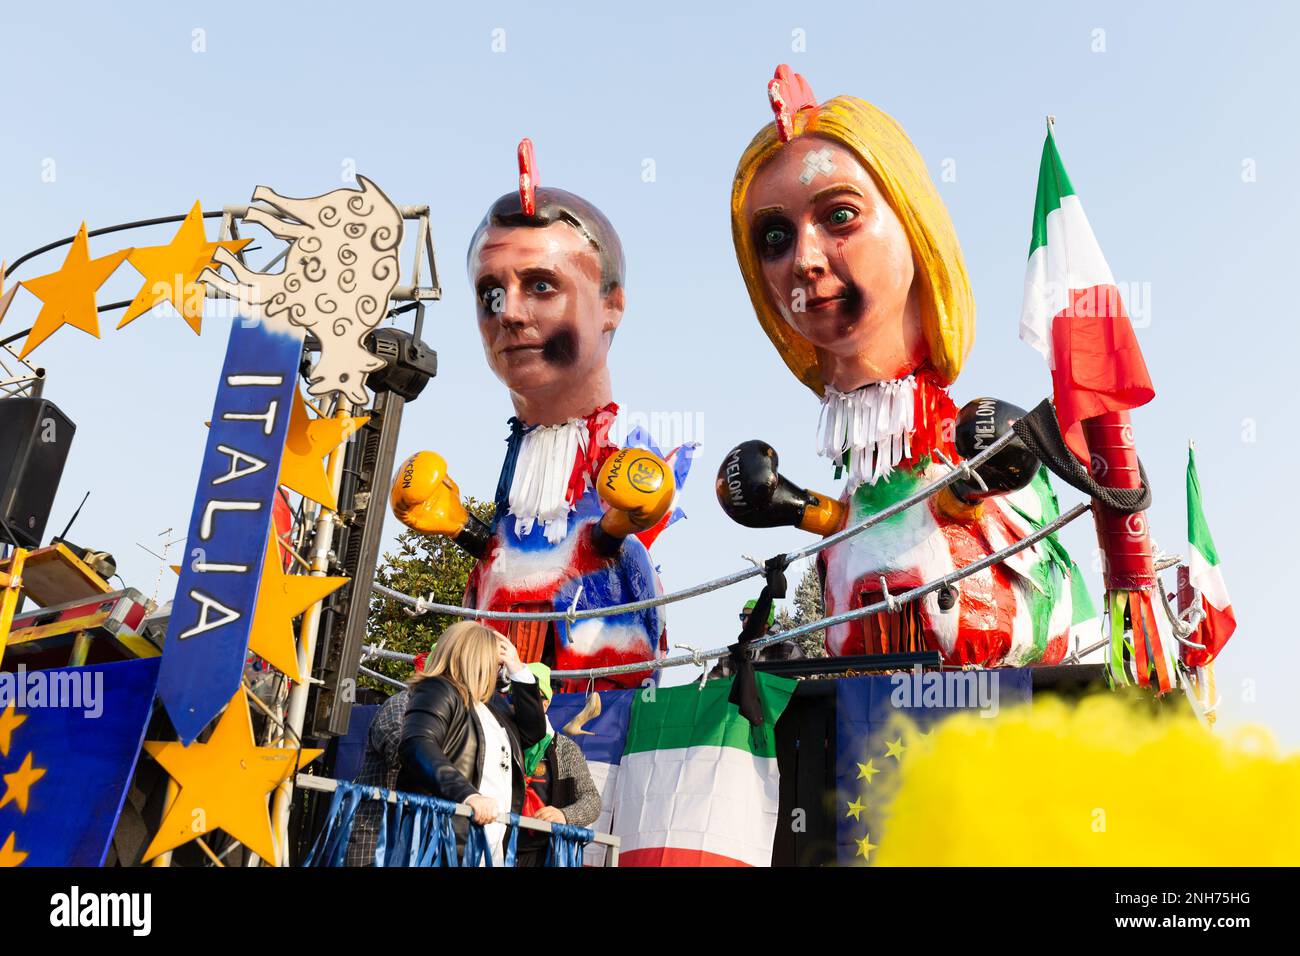 La satire politique dans le Carnaval de Domigliara : Giorgia Meloni et Emmanuel Macron caricaturés sur un flotteur Banque D'Images